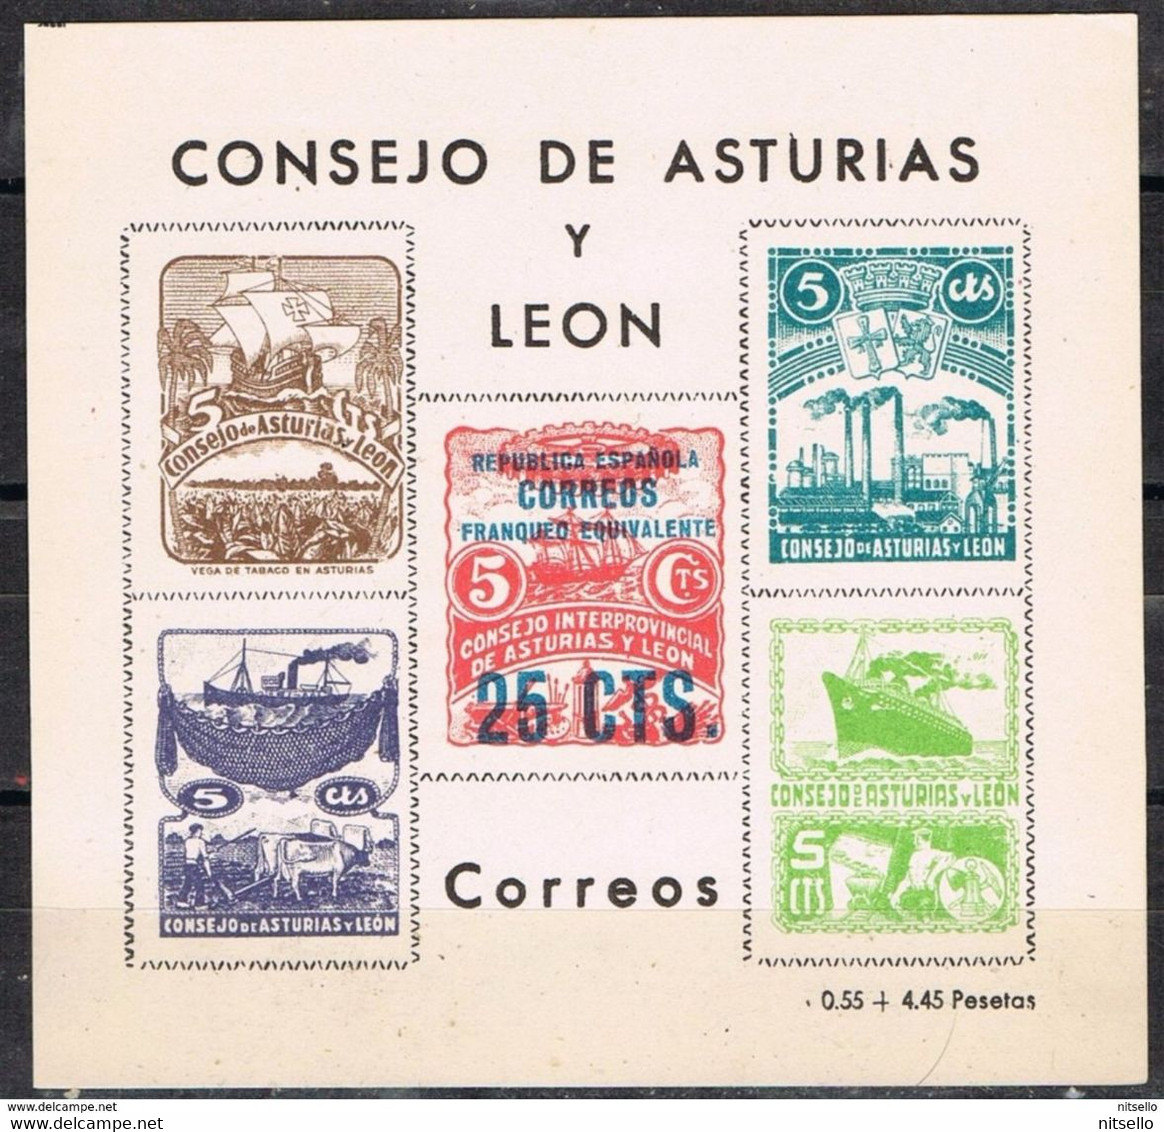 LOTE 1385  ///  CONSEJO DE ASTURIAS Y LEON   25 Ctos       ¡¡¡¡¡¡ LIQUIDATION !!!!!!! - Asturias & Leon